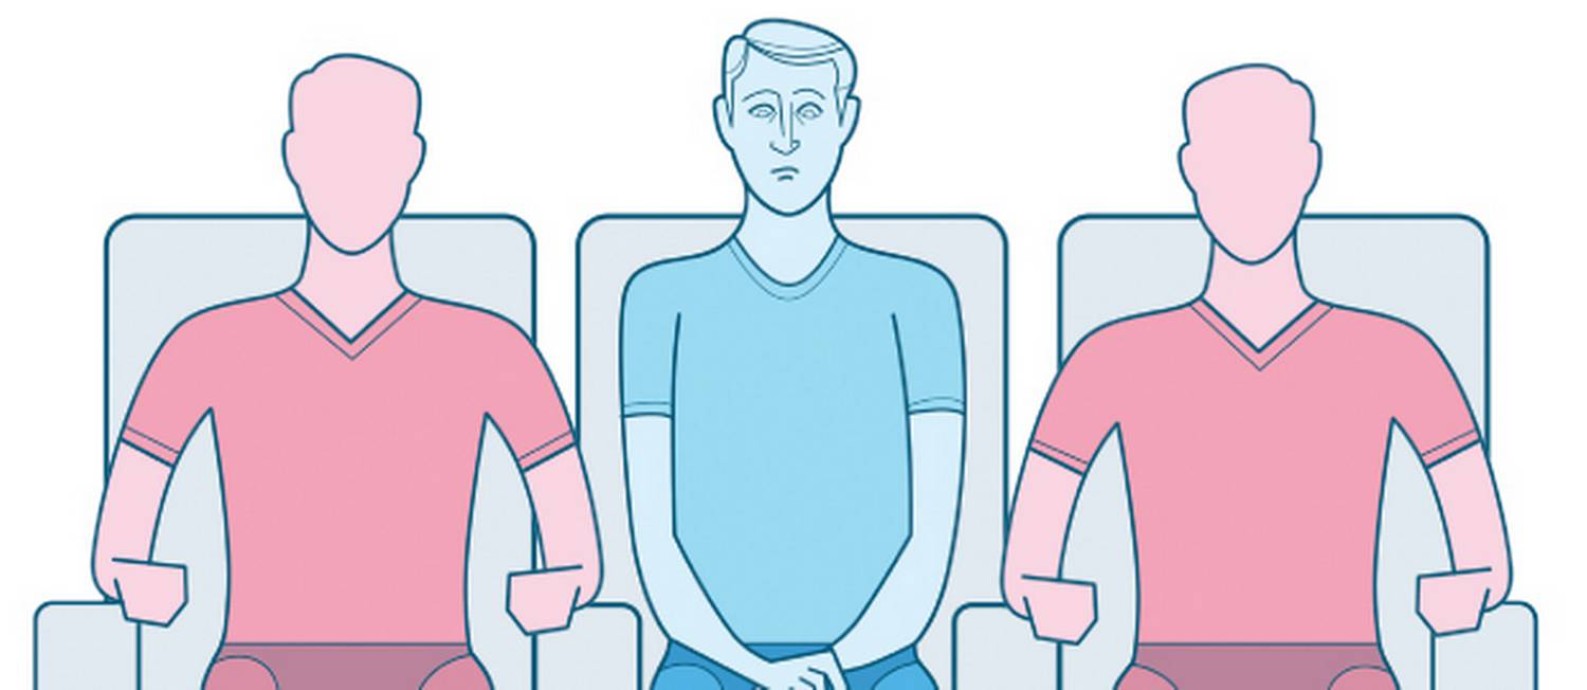 Manual de etiqueta para turistas: o que fazer em caso de sentar no assento do meio no avião? Foto: André Mello / Editoria de Arte